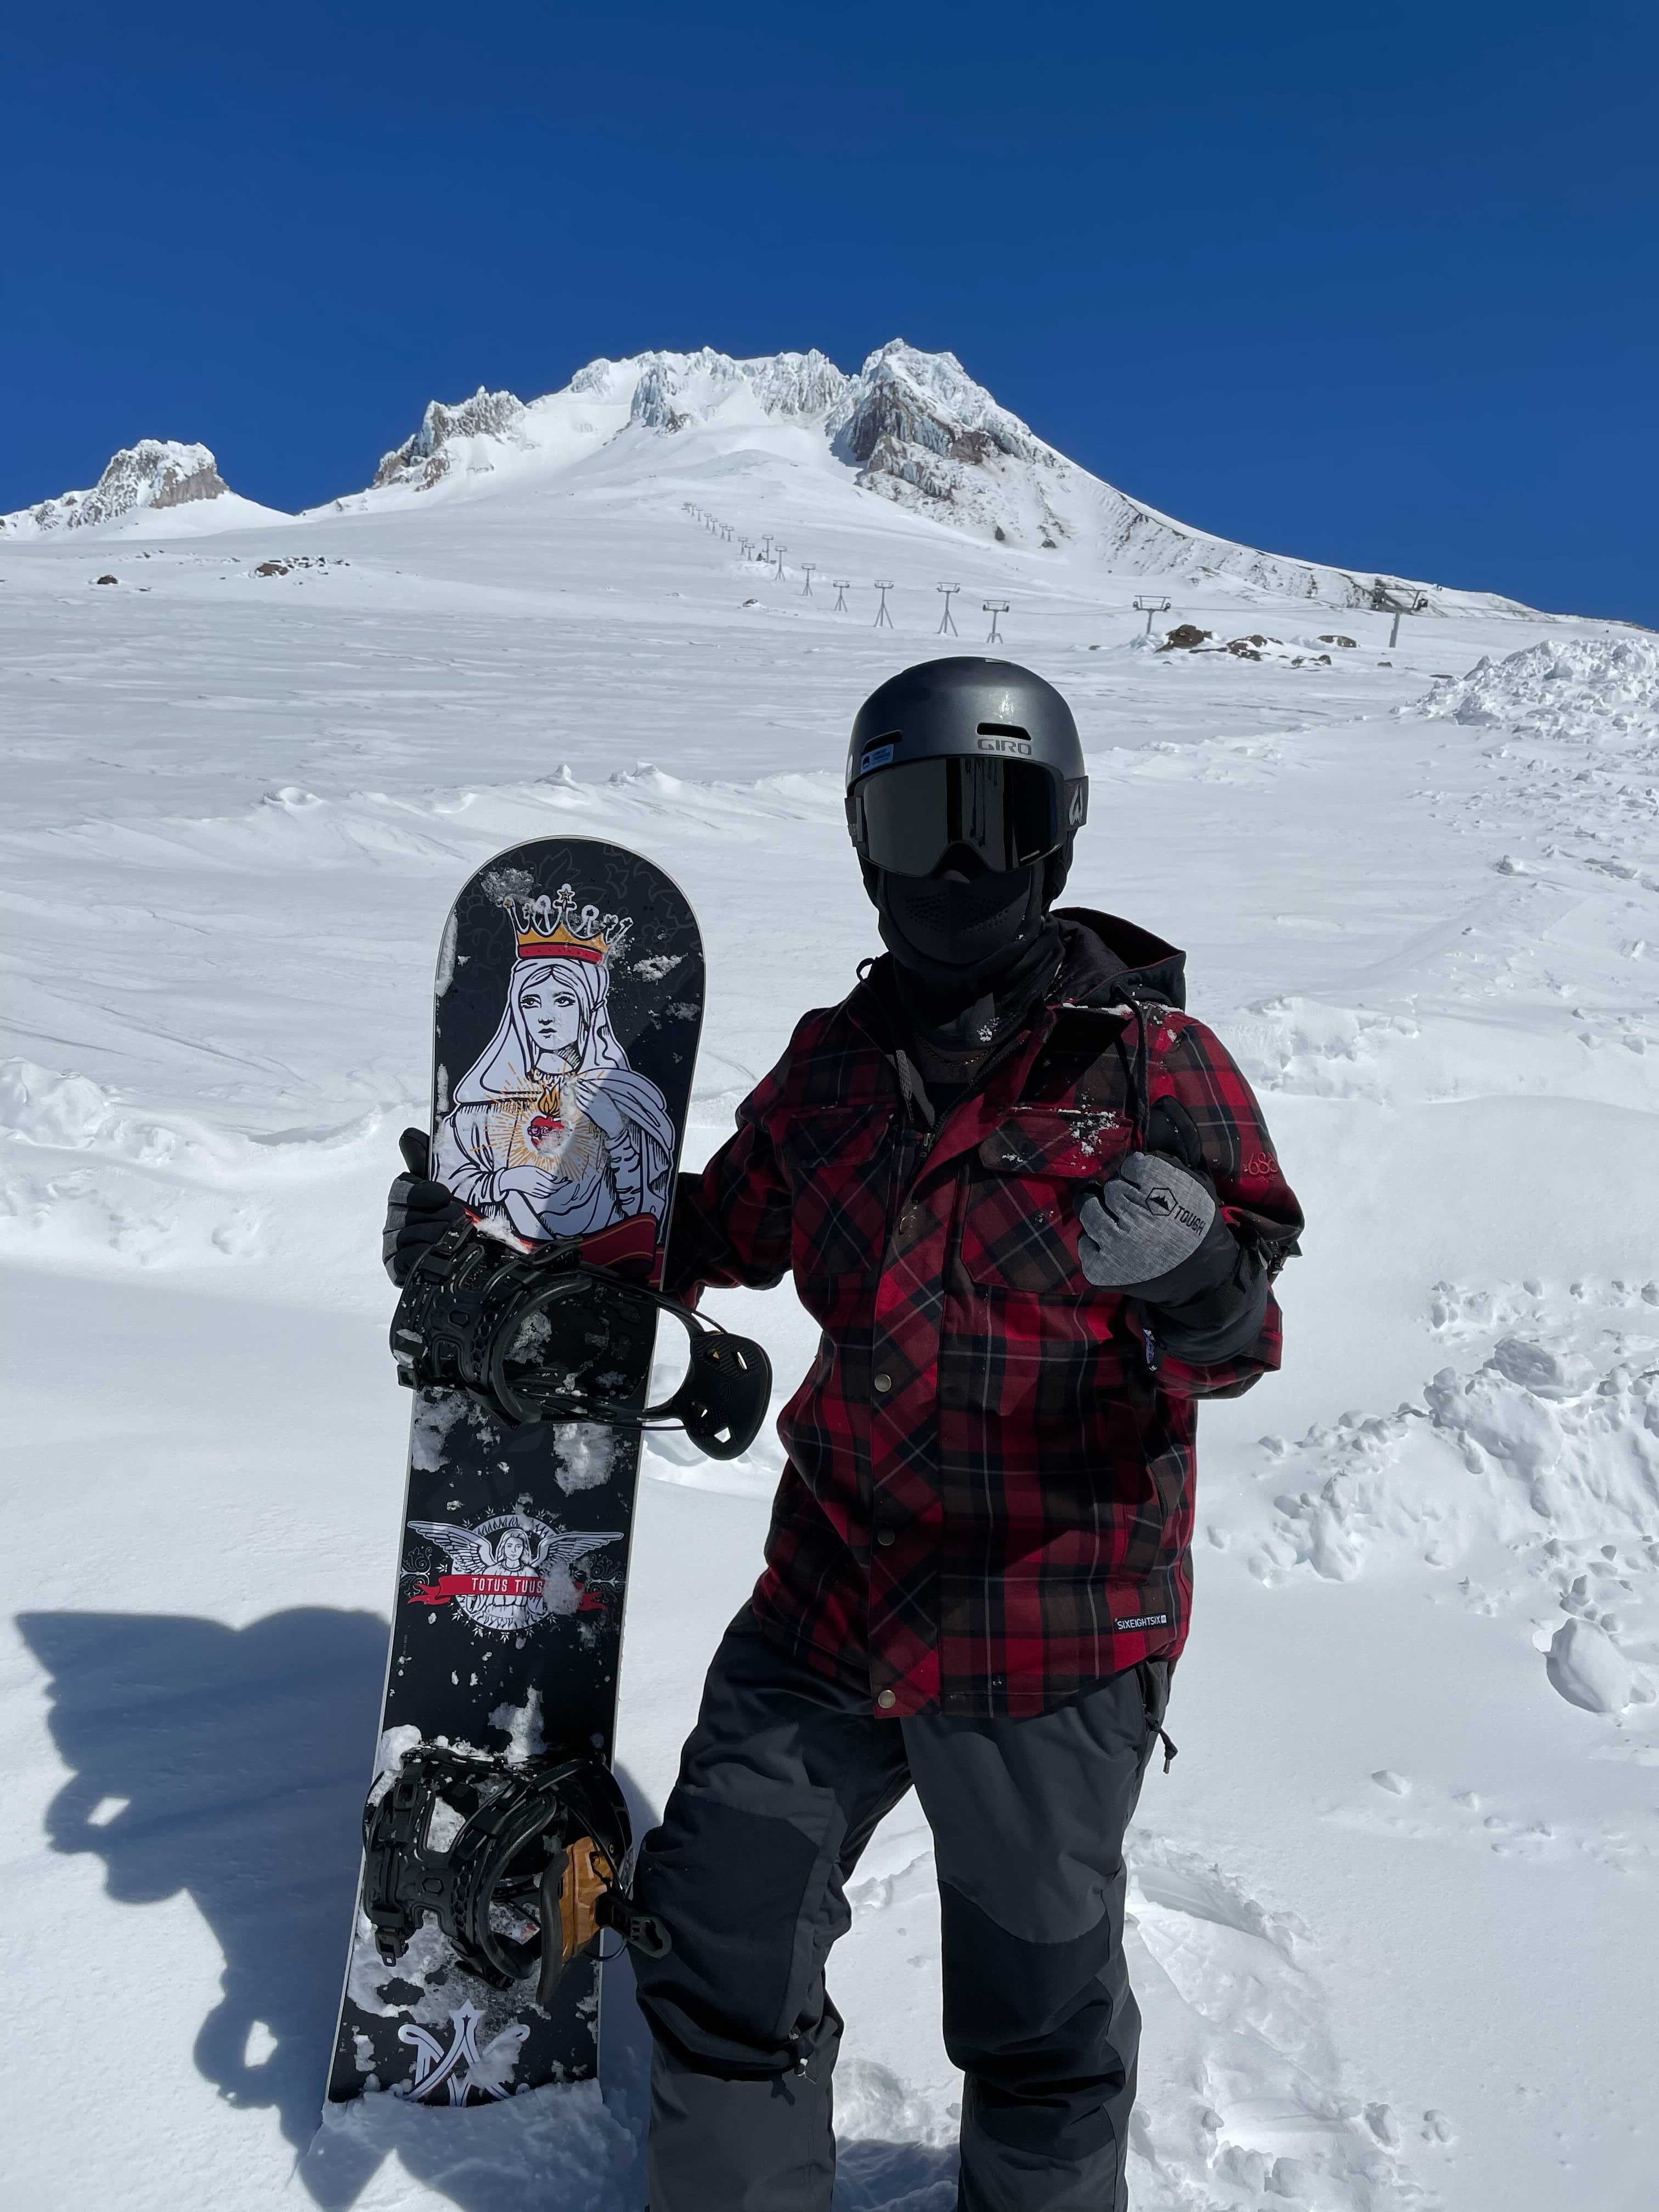 dday snowboard